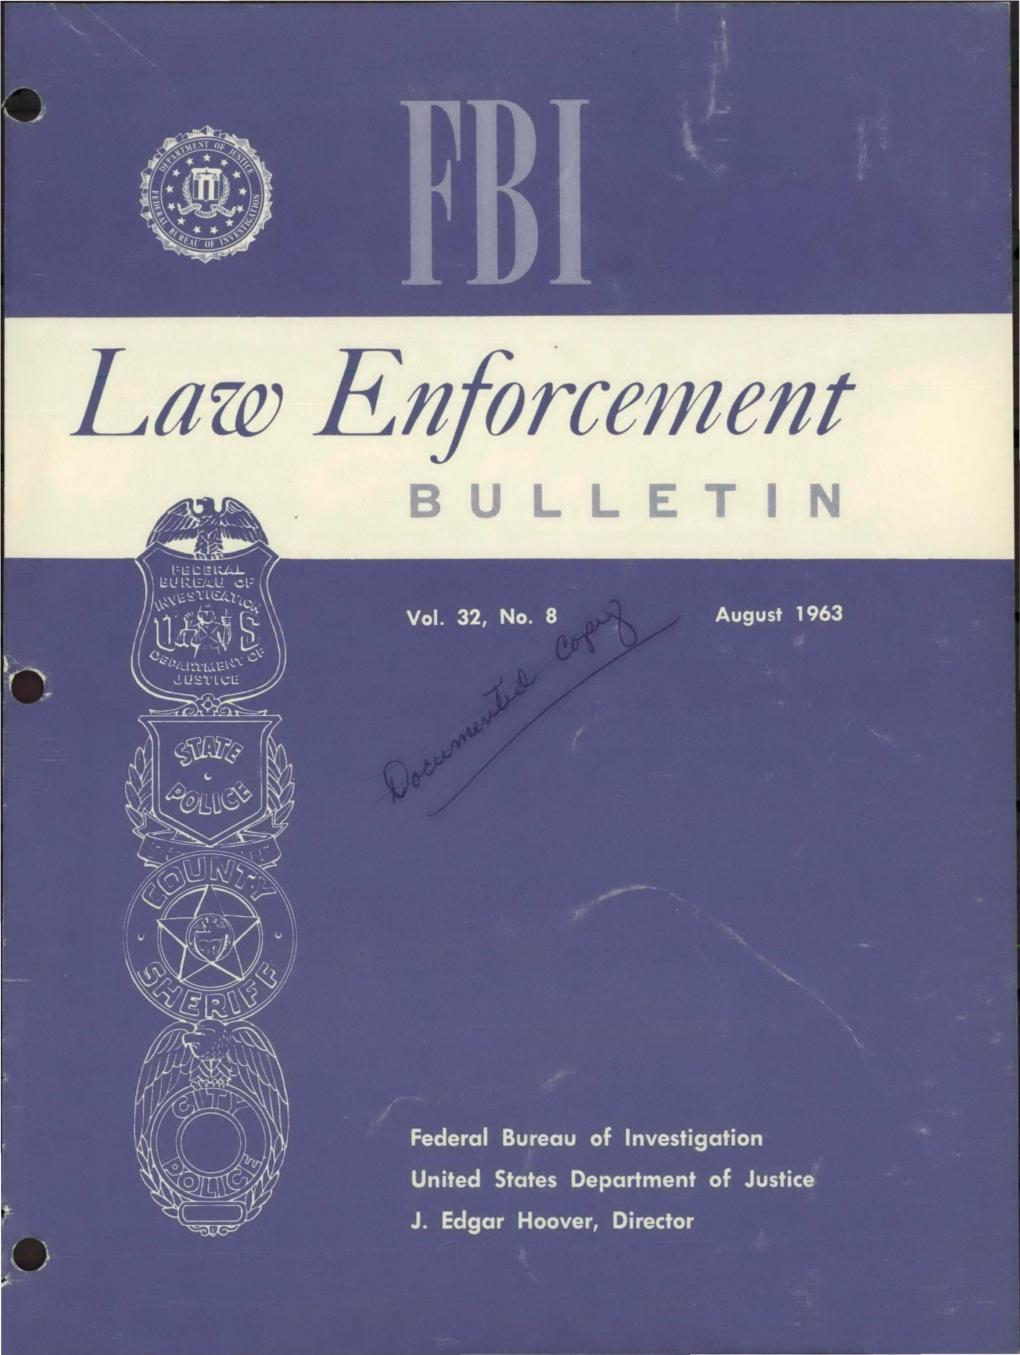 Law Enforcement BULLETIN Contents